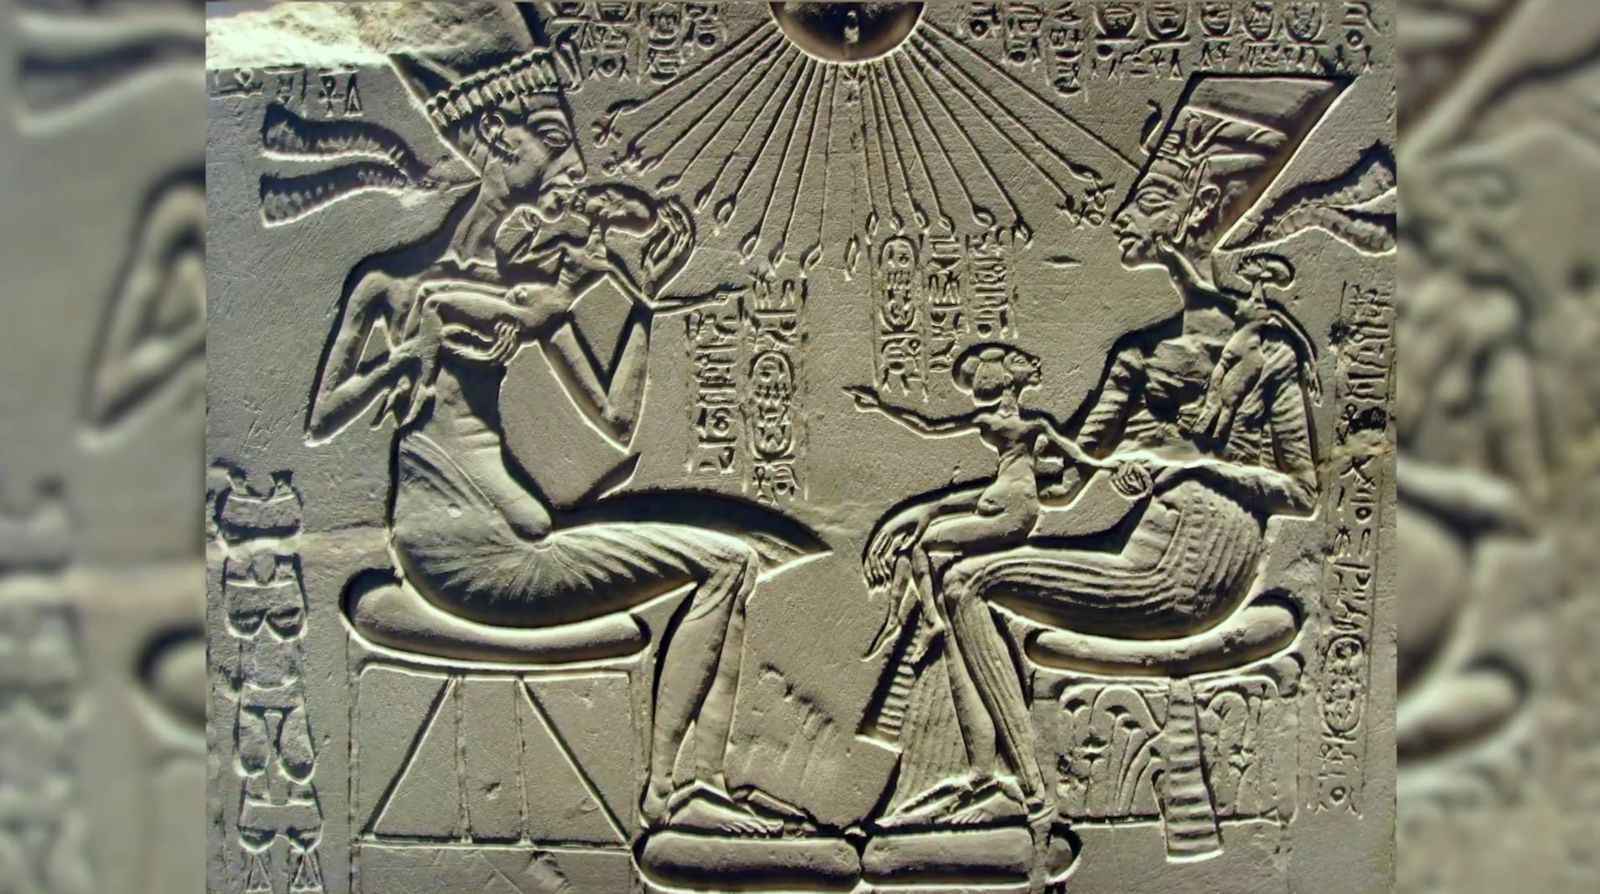 8_Egyptian_carving.jpg